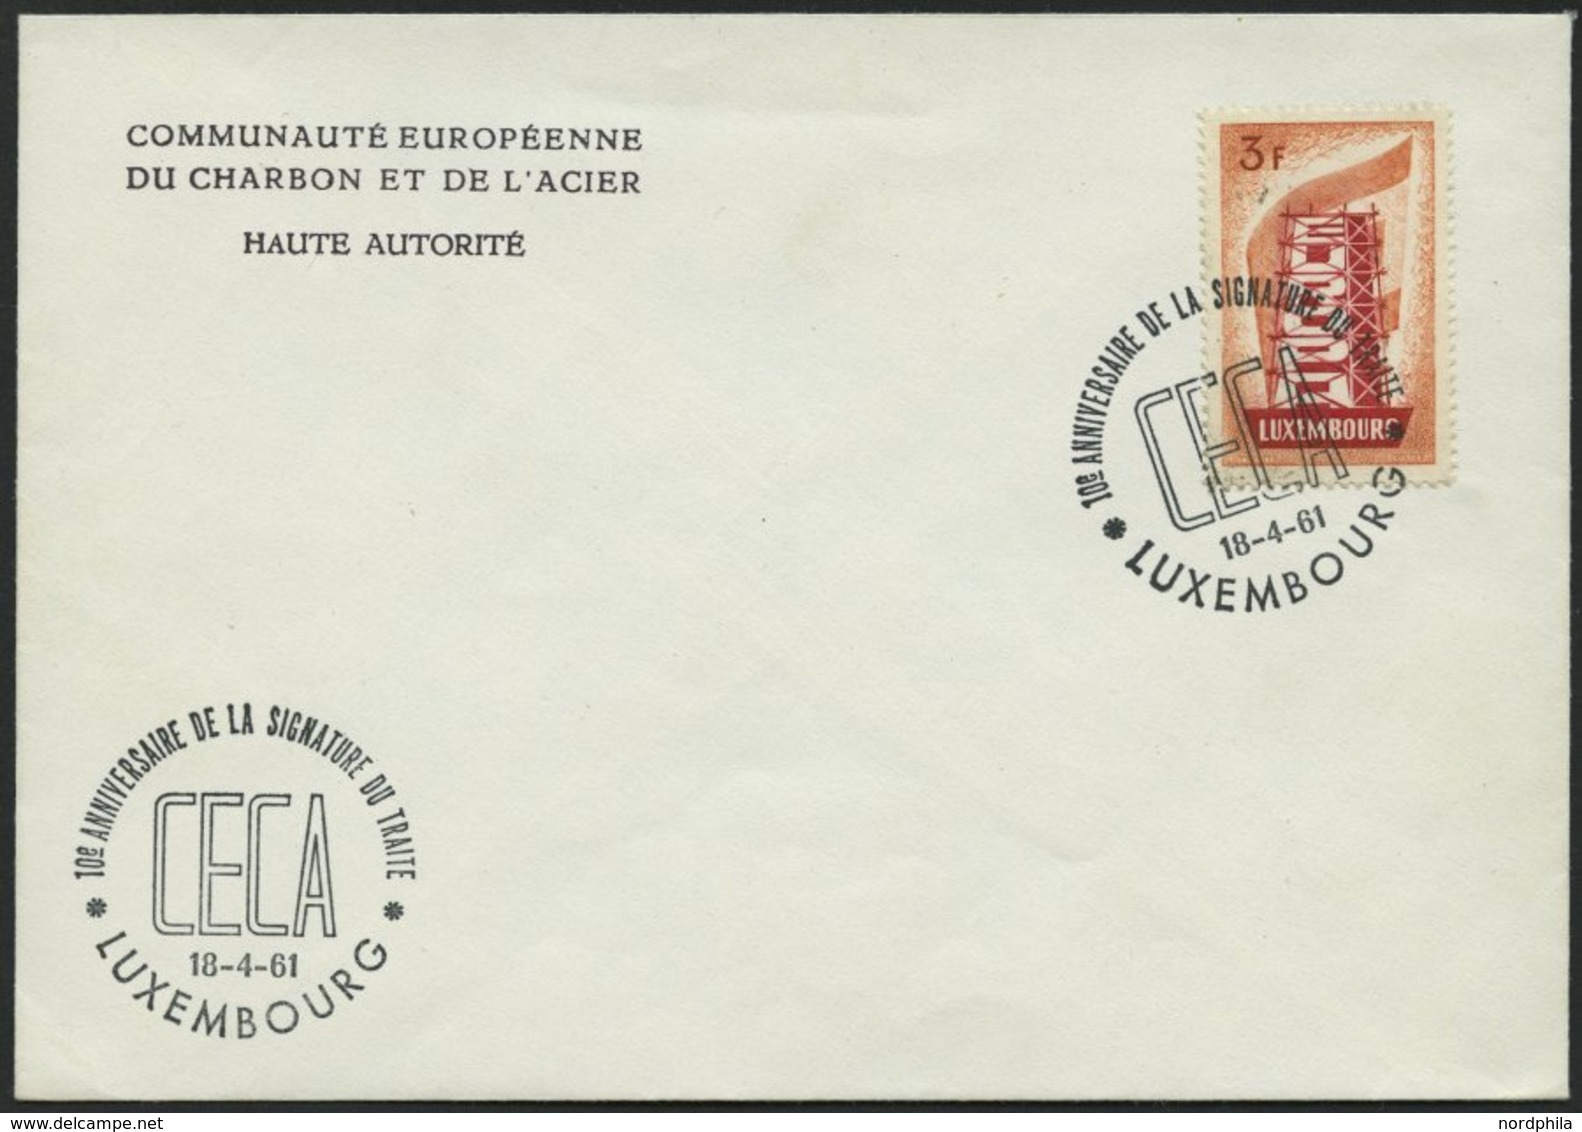 LUXEMBURG 556 BRIEF, 1956, 3 Fr. Europa Mit Sonderstempel Auf Umschlag, Pracht - Oficiales